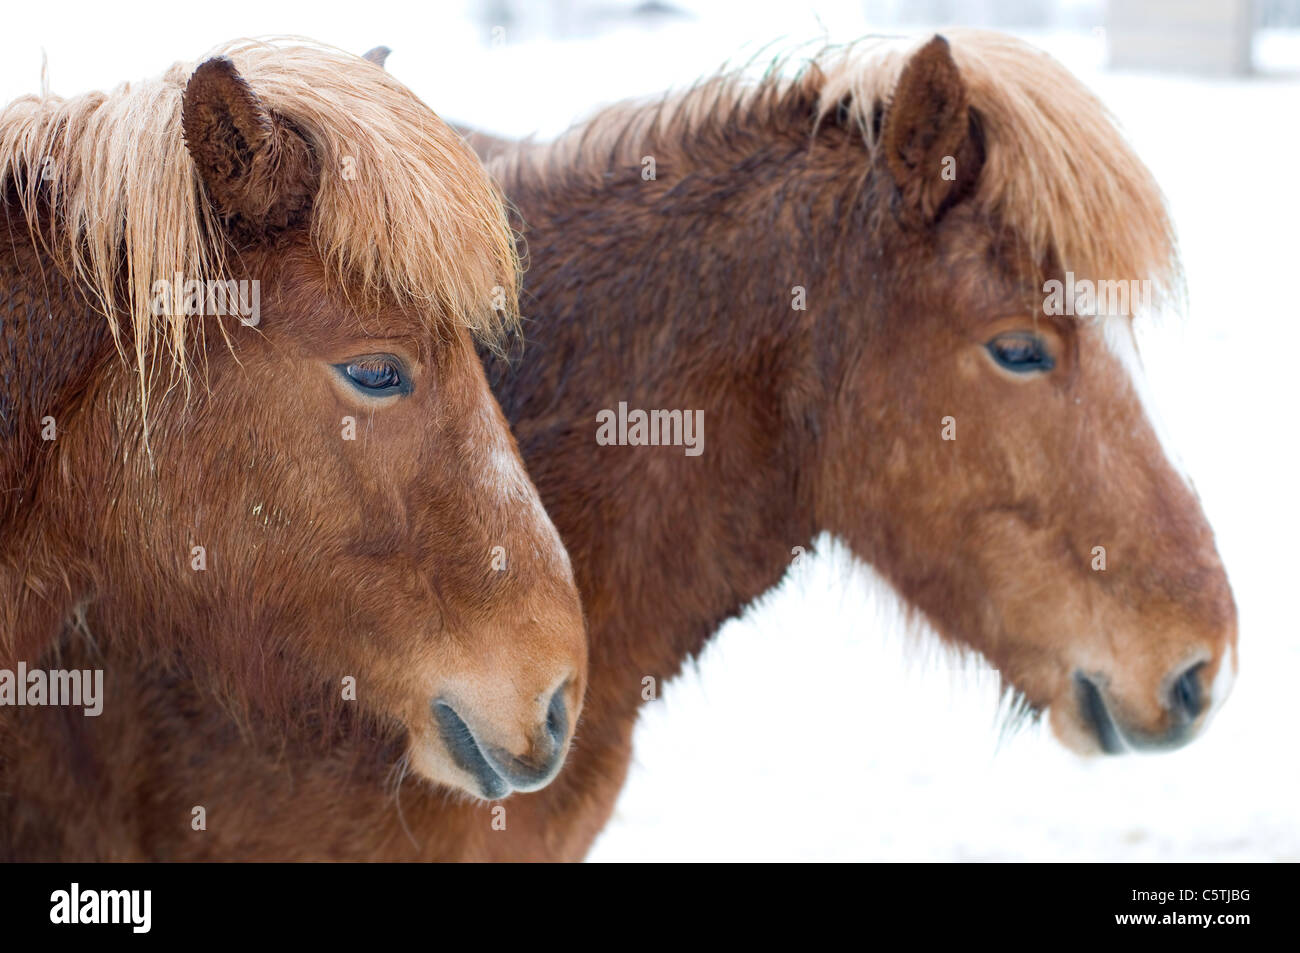 Sweden, Ã–rnskÃ¶ldsvik, Two Shetland ponies (Equus f. caballus) portrait, close-up Stock Photo